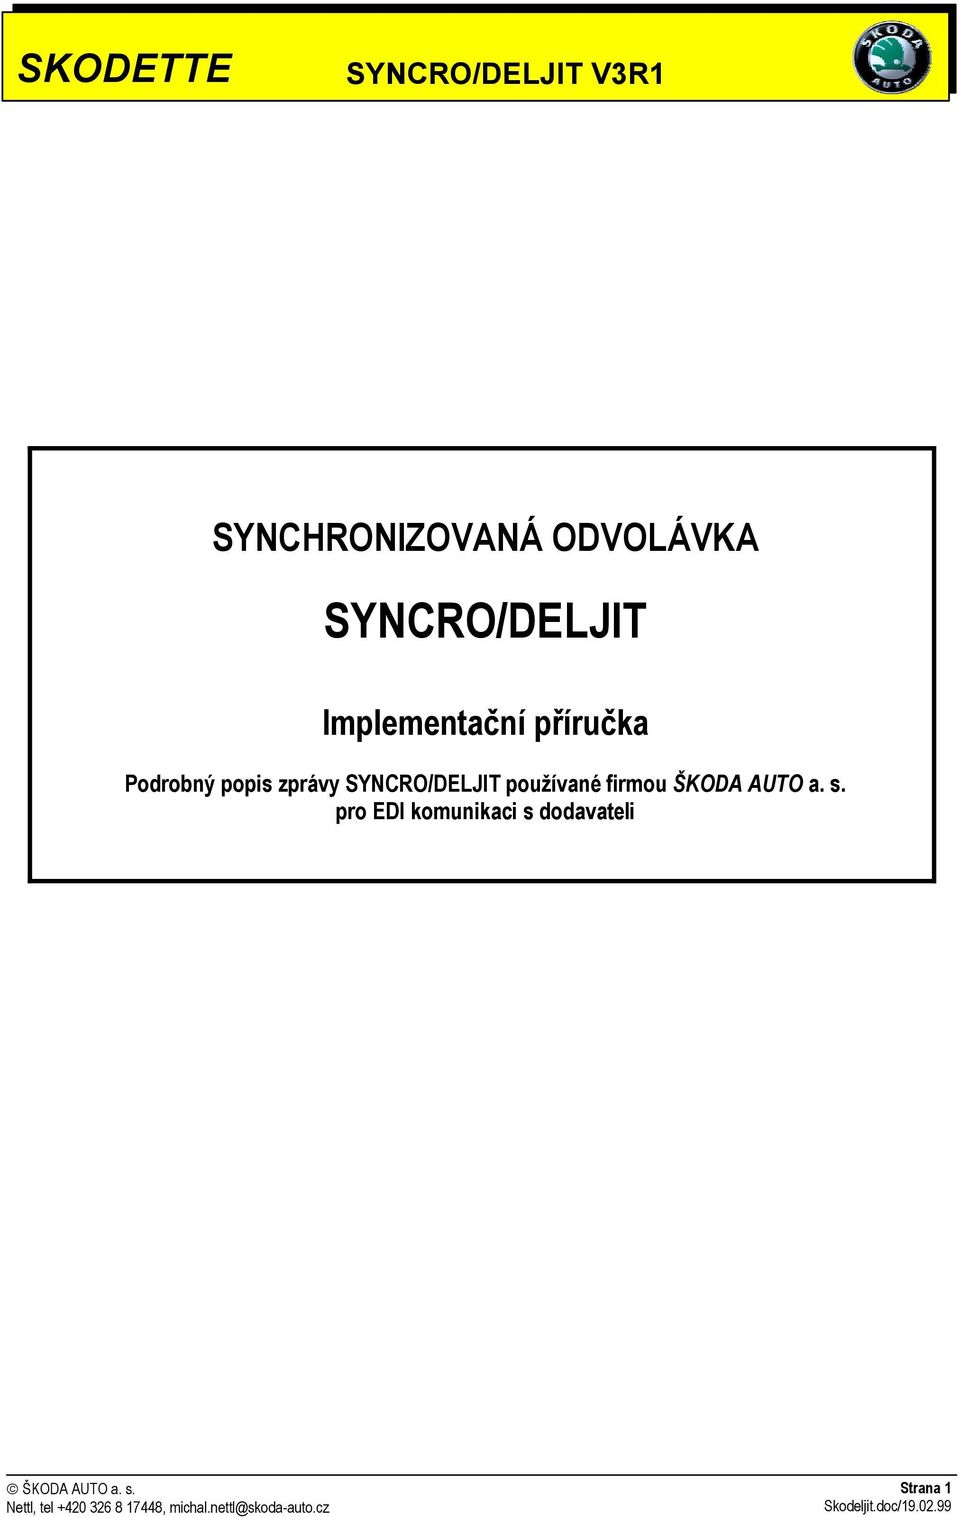 SYNCRO/DELJIT používané firmou ŠKODA AUTO